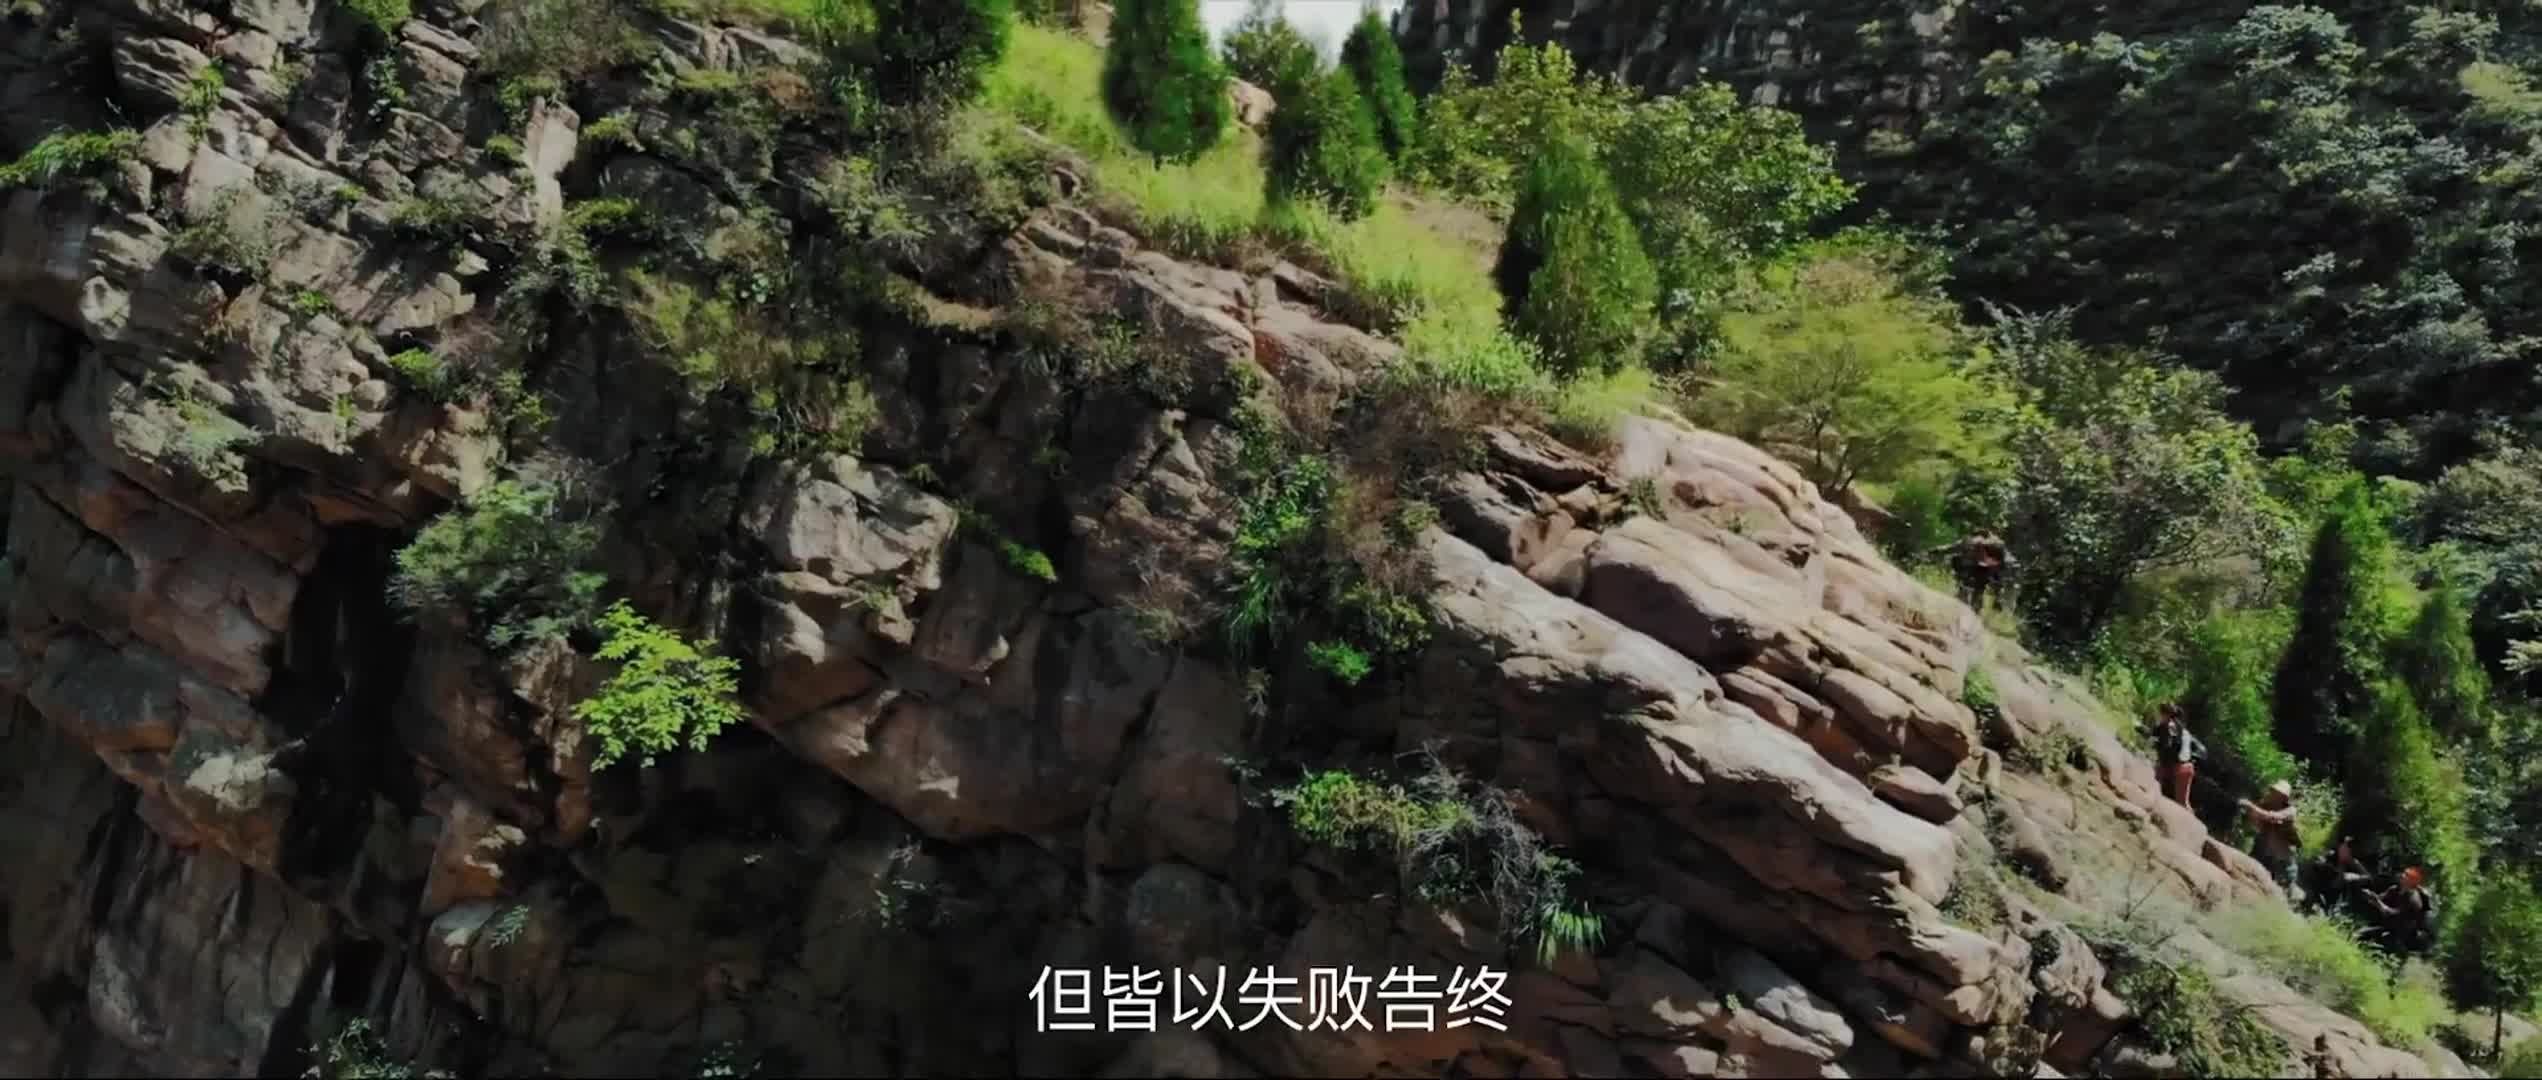 Mojin: Raiders of the Wu Gorge (2019)